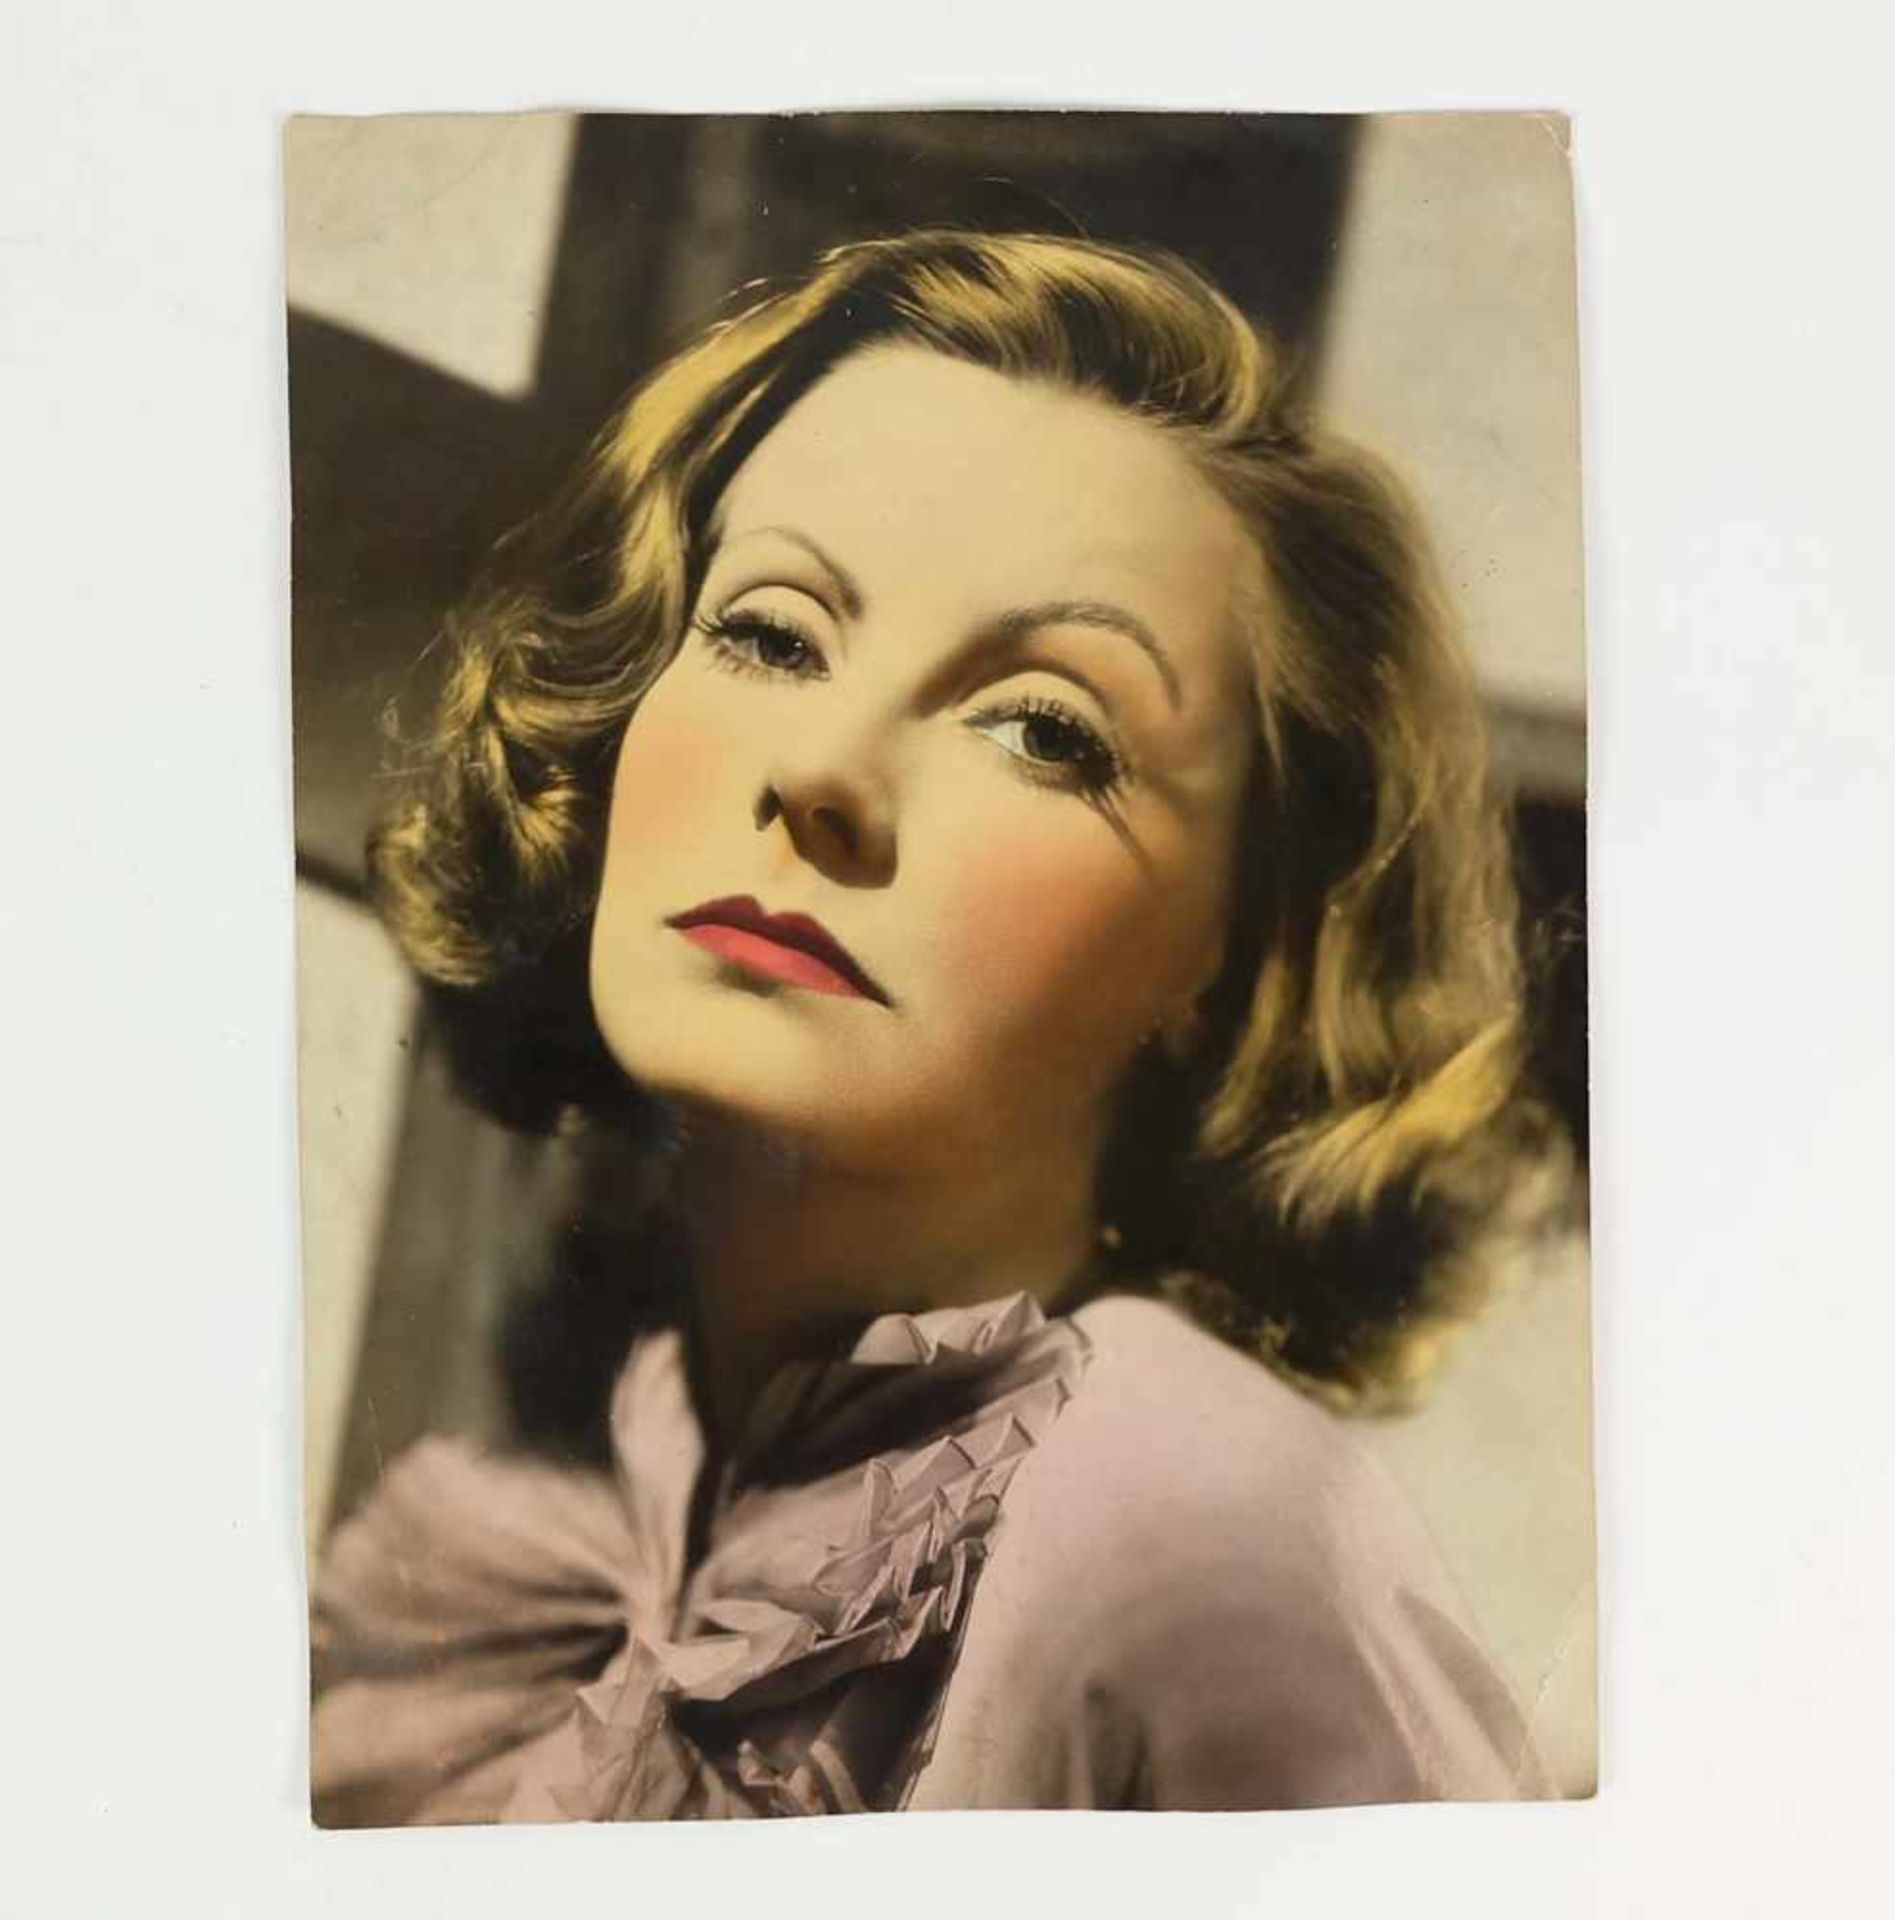 FOTOGRAFIE, Porträt der Greta Garbo, 1930er/ 40er Jahre, Schwarz/Weiß, coloriert, 34 x 25,8 cm,